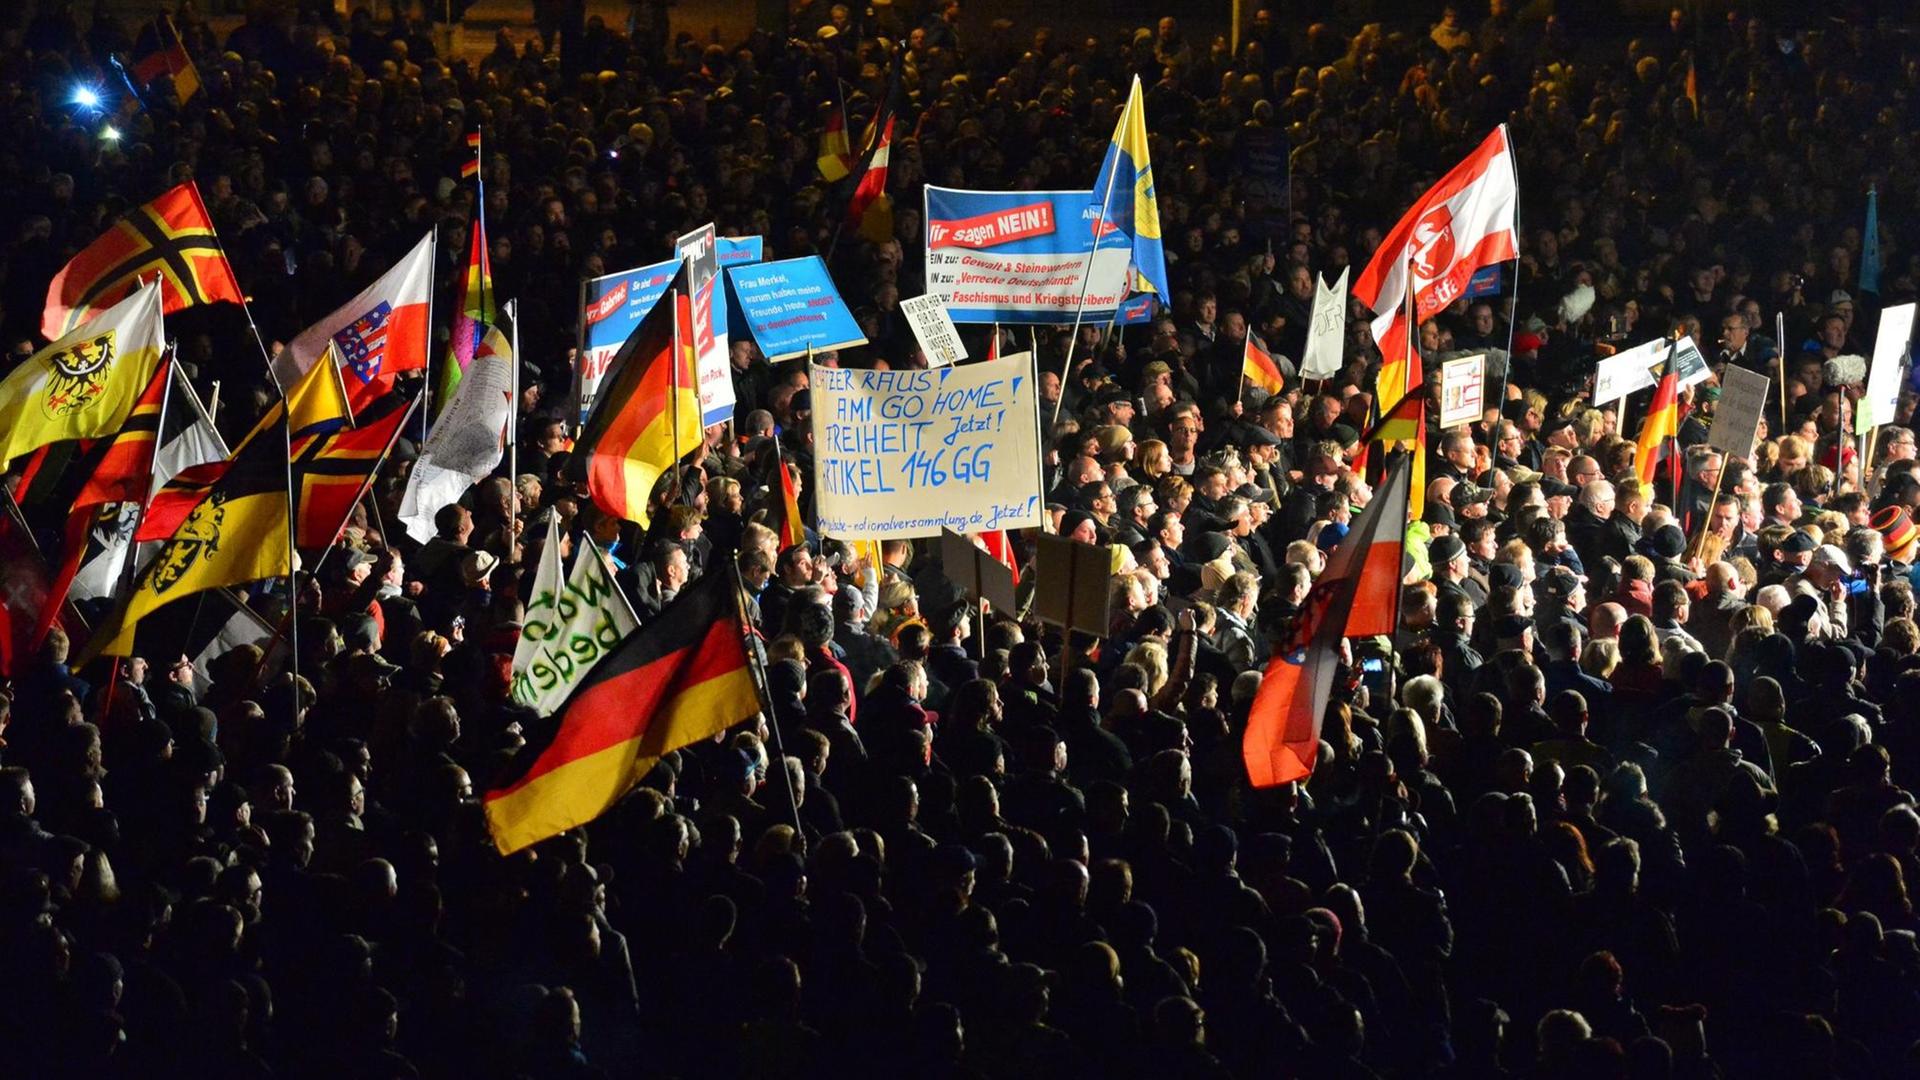 Teilnehmer einer Kundgebung der "Alternative für Deutschland" (AfD) in Erfurt.